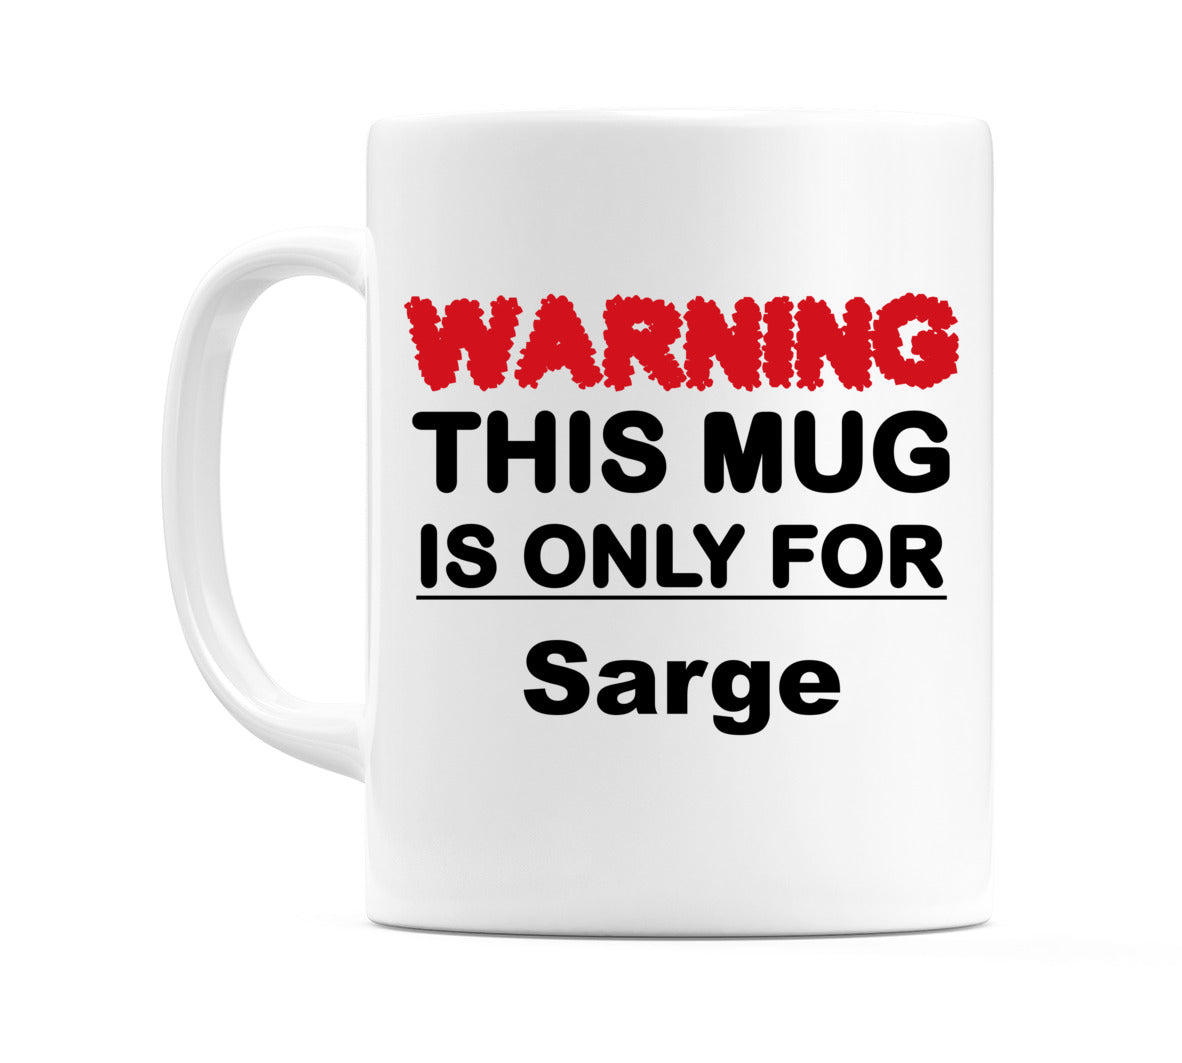 Warning This Mug is ONLY for Sarge Mug